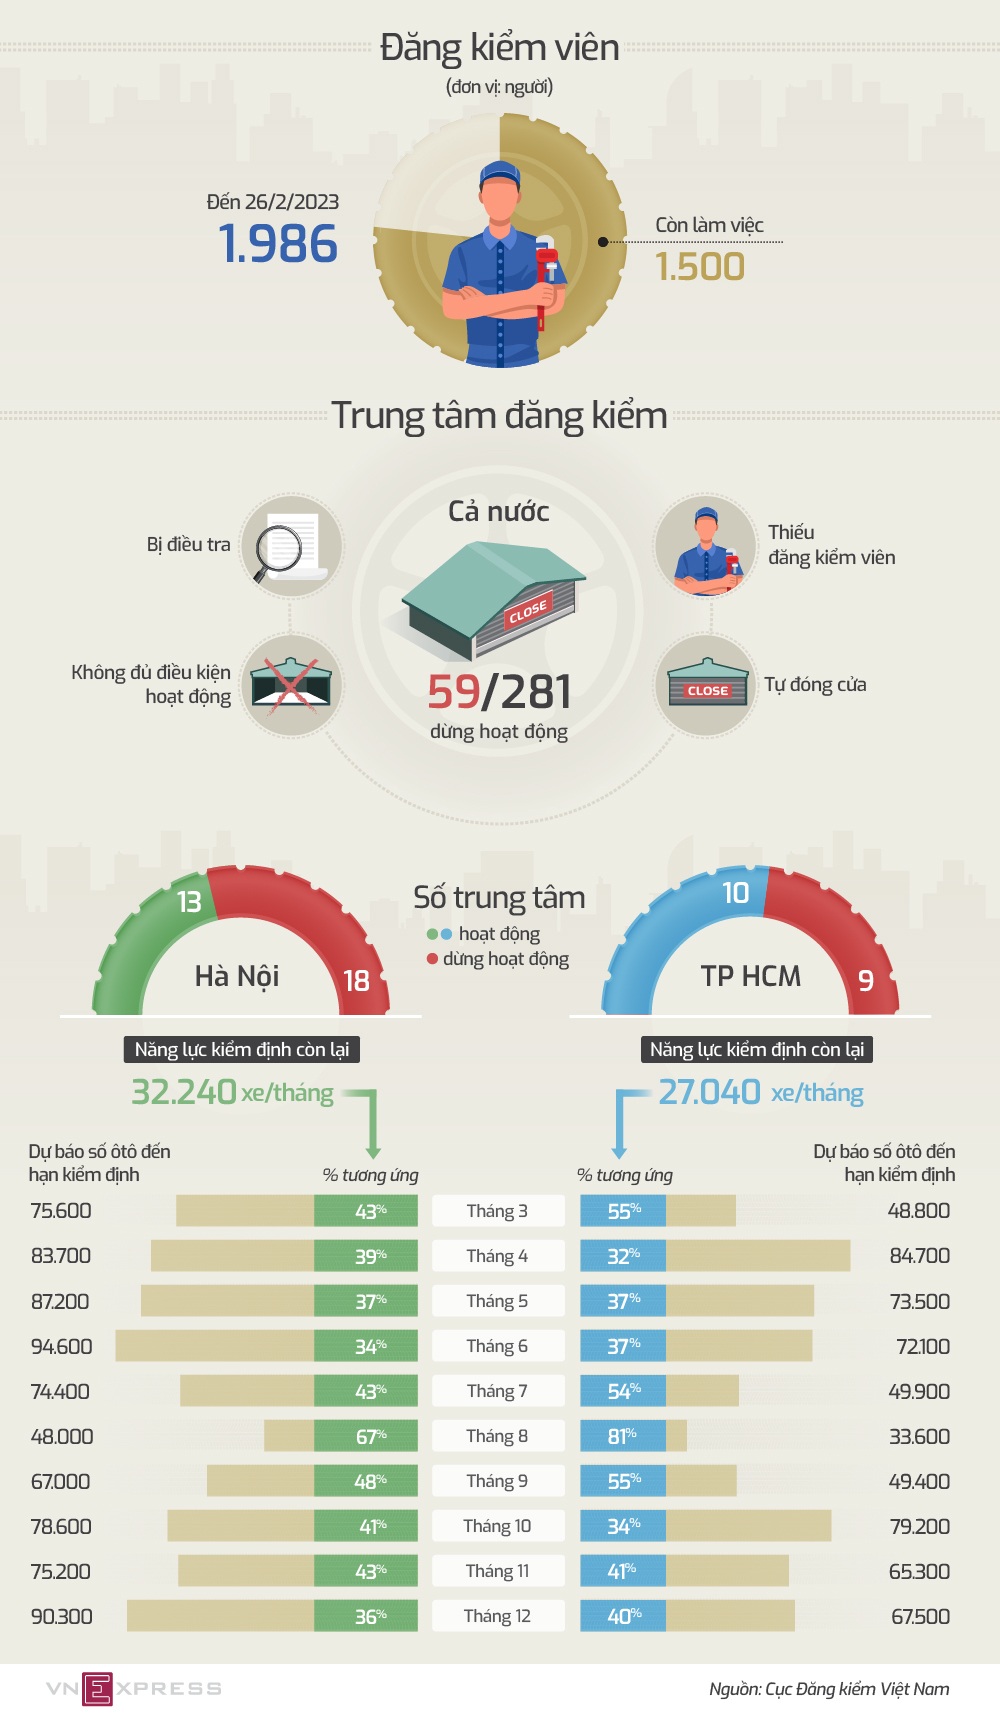 Gần 70% ôtô Hà Nội và TP HCM gặp khó về kiểm định trong 3 tháng tới